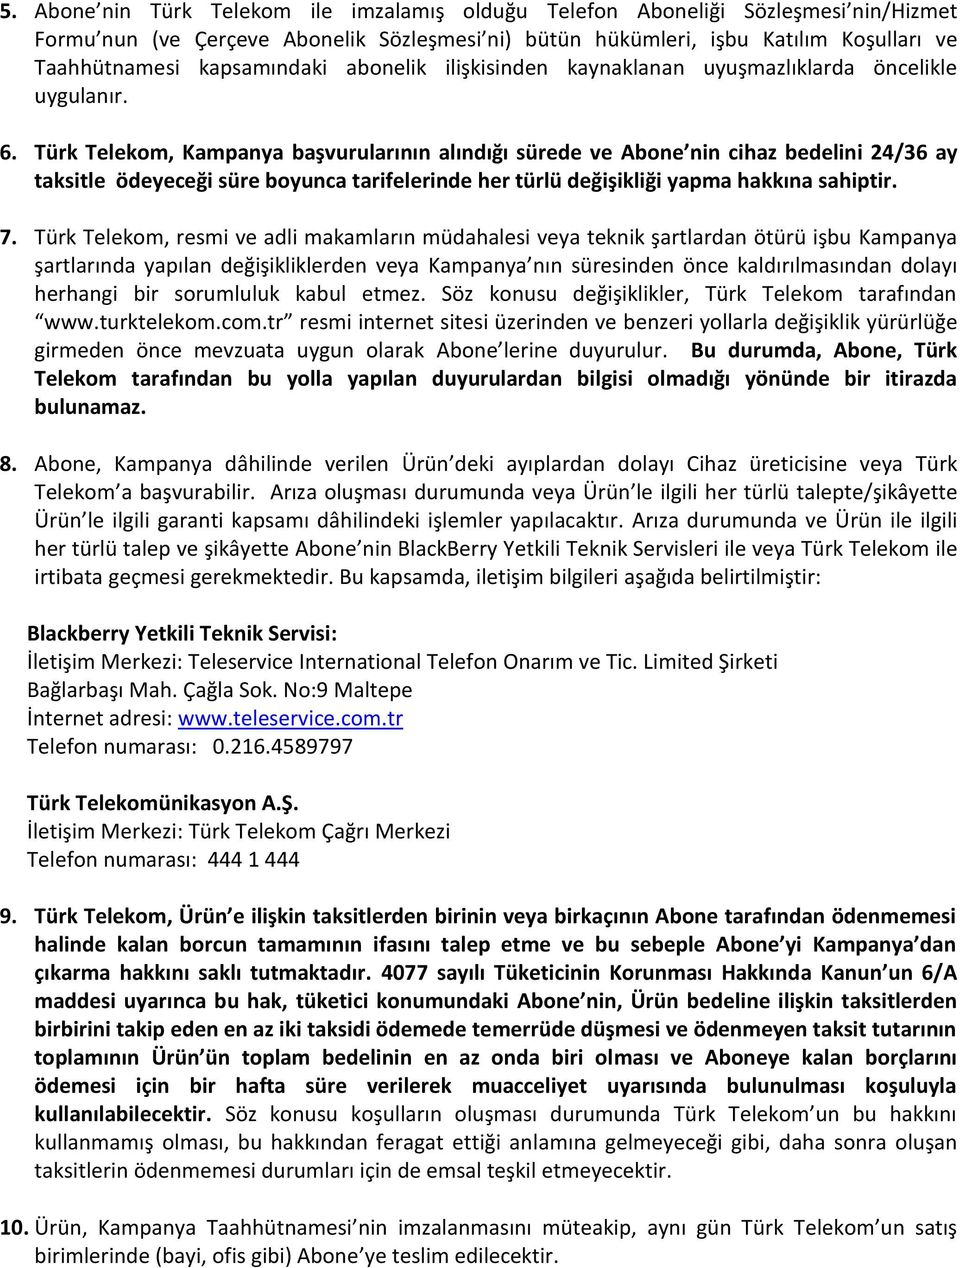 Türk Telekom, Kampanya başvurularının alındığı sürede ve Abone nin cihaz bedelini 24/36 ay taksitle ödeyeceği süre boyunca tarifelerinde her türlü değişikliği yapma hakkına sahiptir. 7.